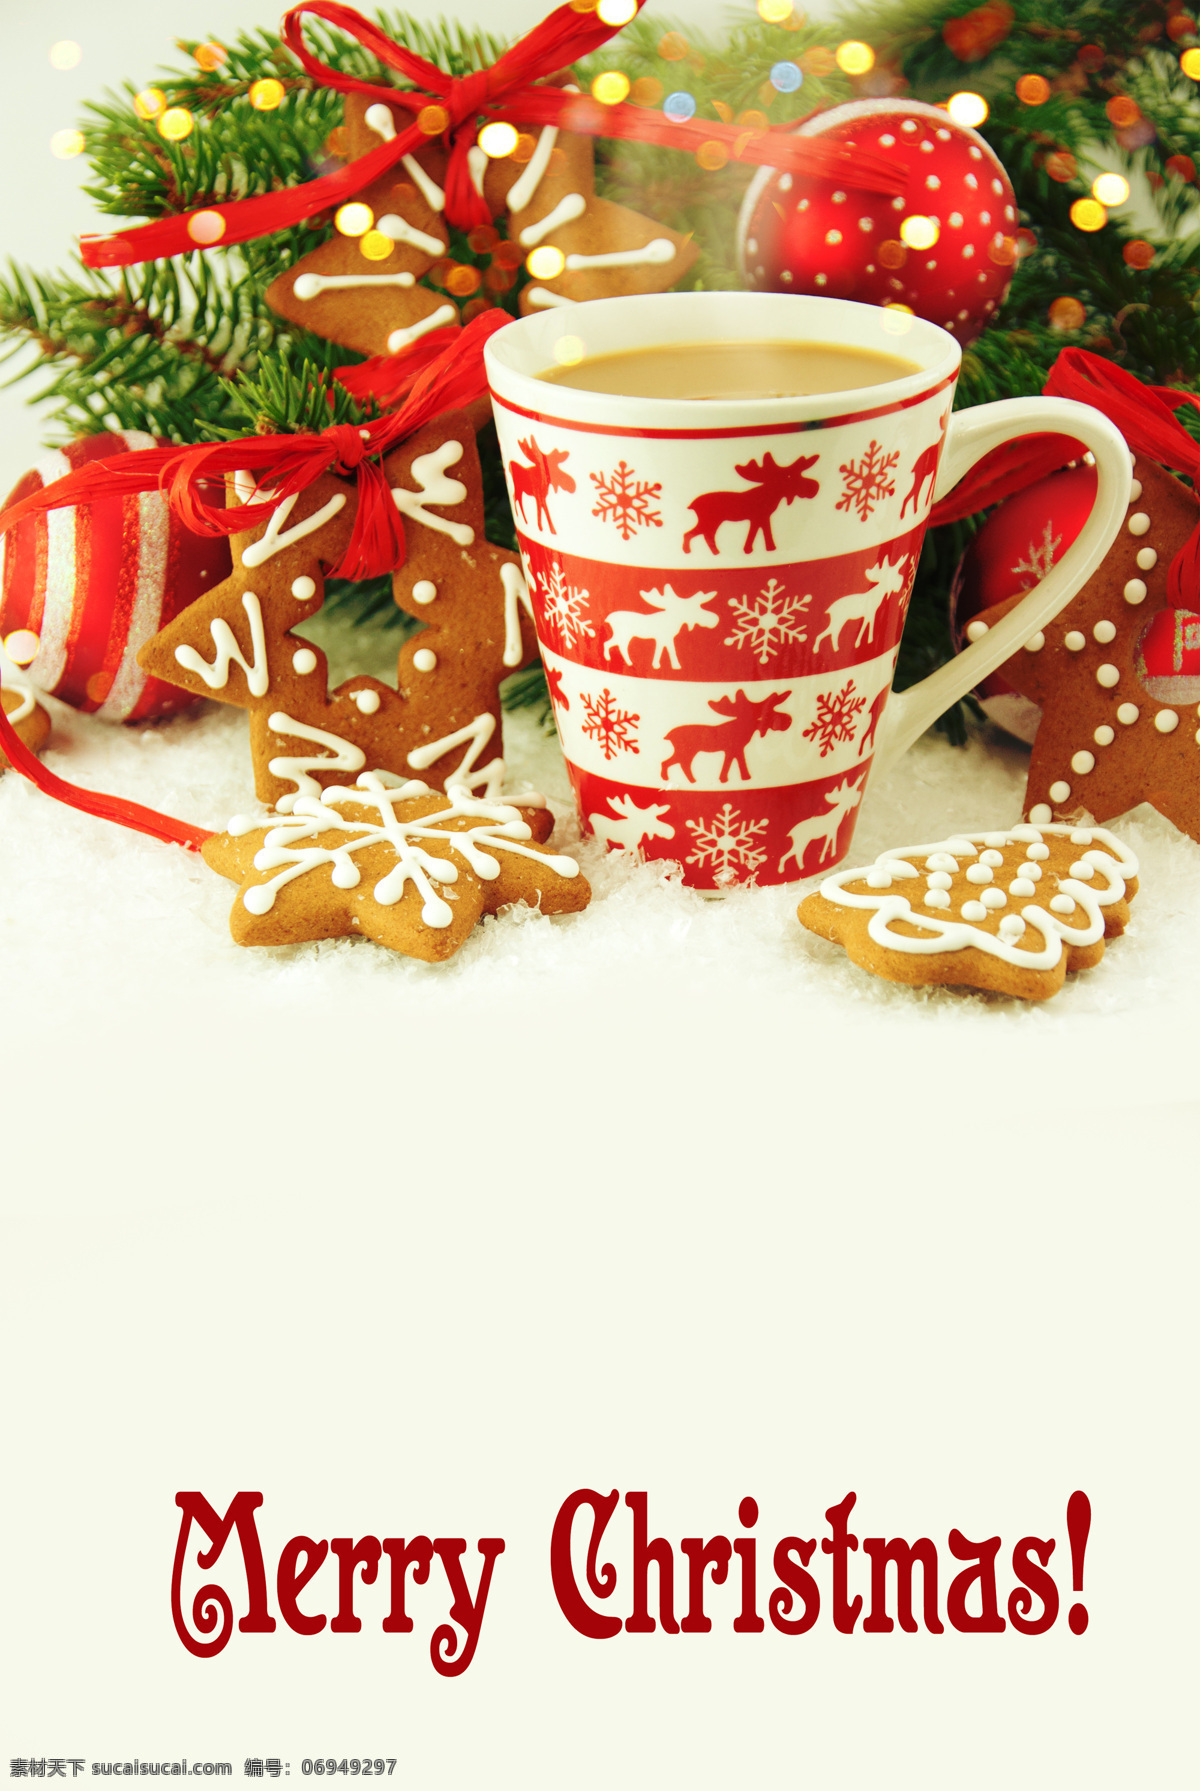 一杯 咖啡 圣诞 装饰物 饼干 松枝 礼物 圣诞节 节日庆典 生活百科